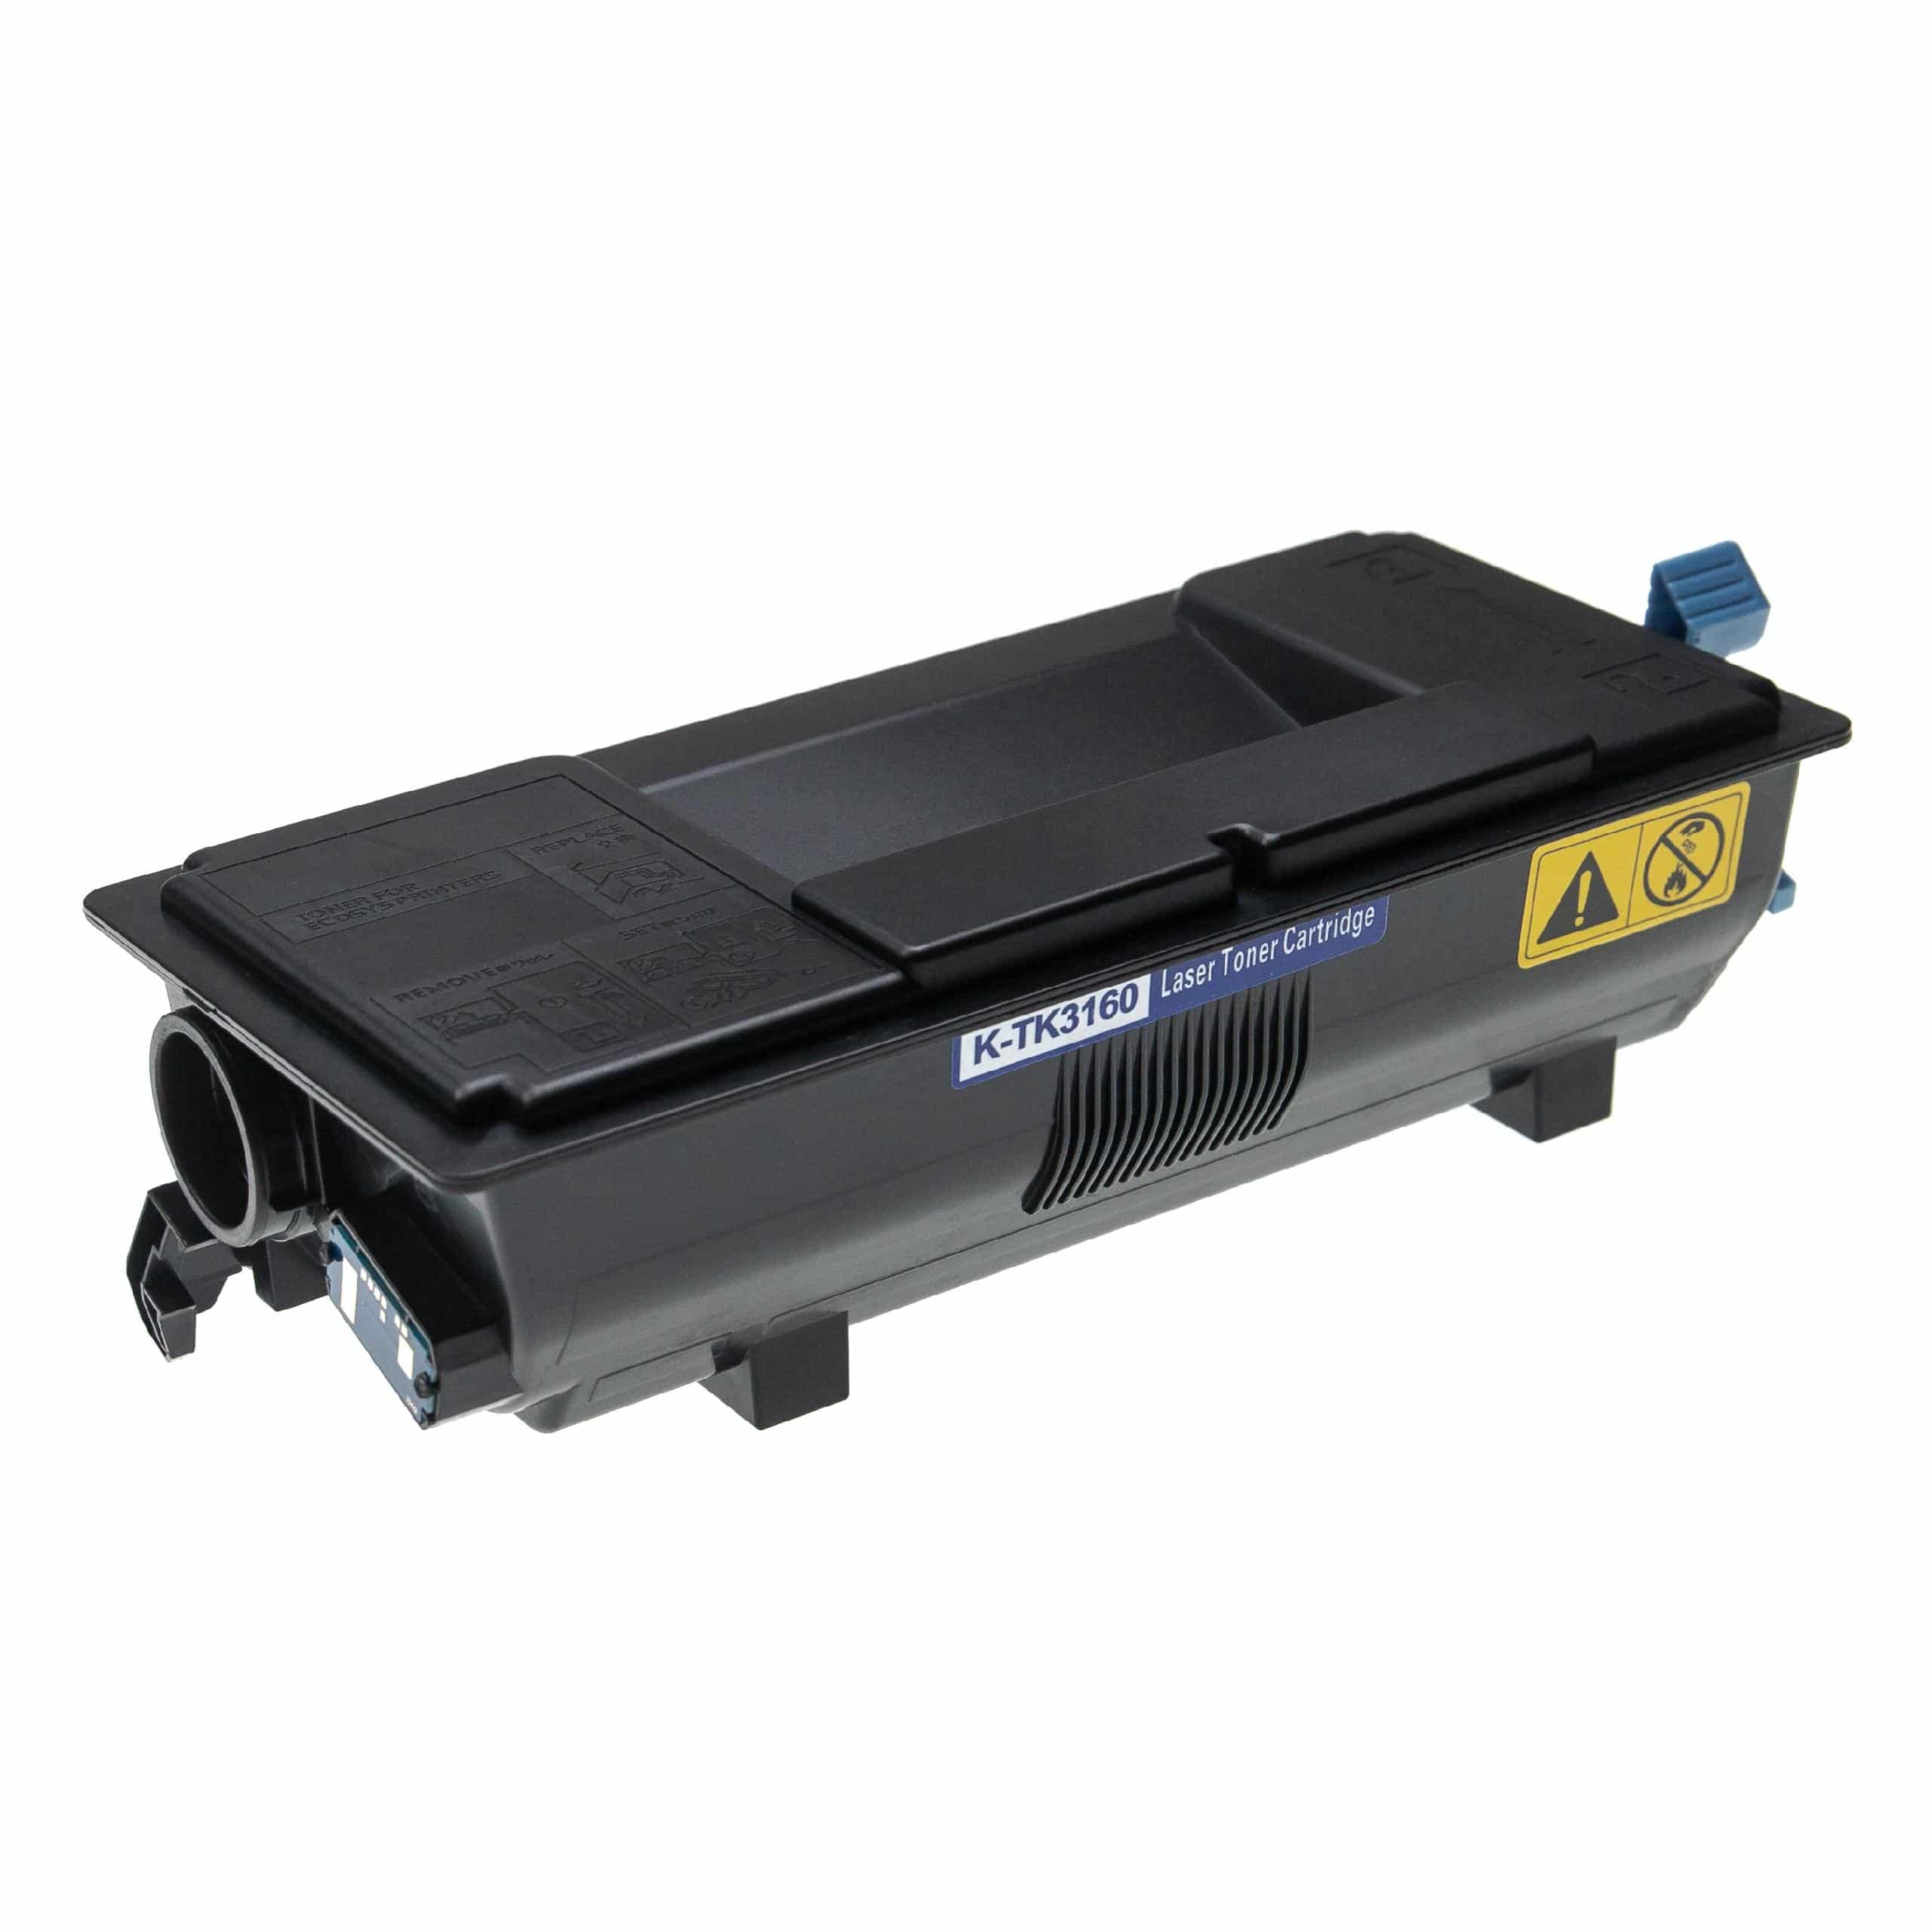 3x Cartouches de toner remplace Kyocera TK-3160 pour imprimante laser Kyocera + récupérateur, noir